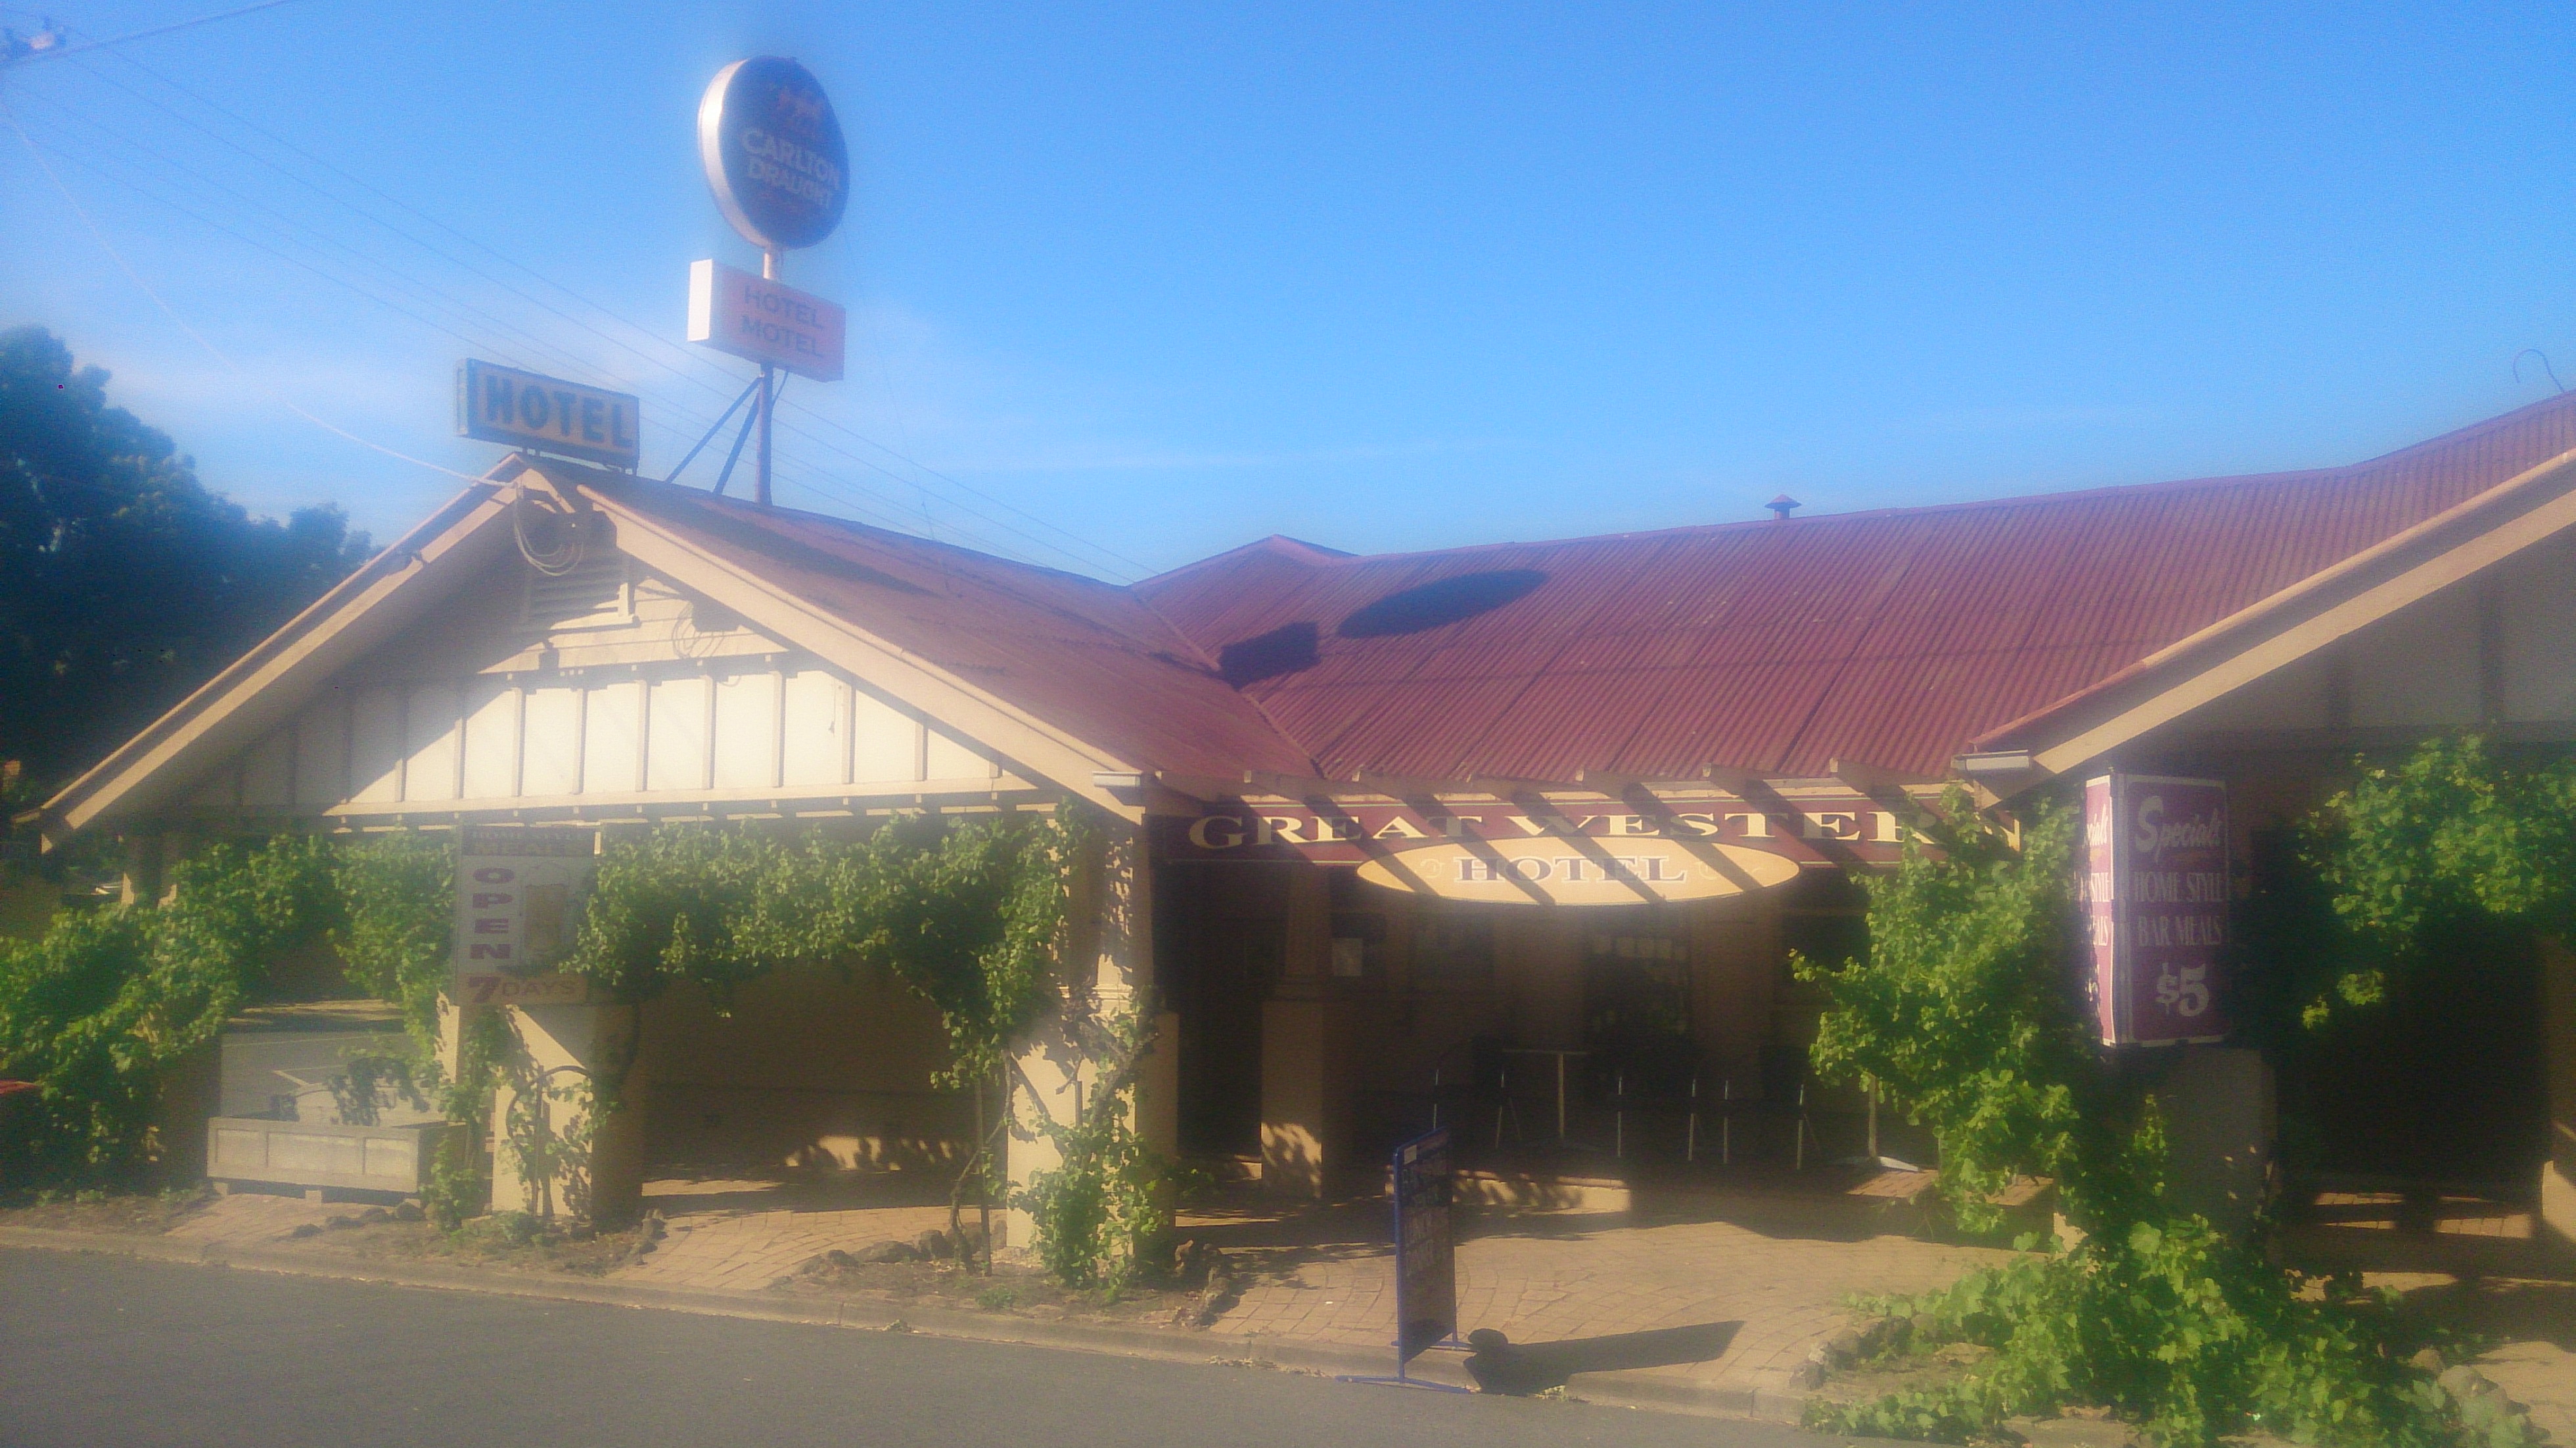 Great Western Hotel Motel - Accommodation Sunshine Coast